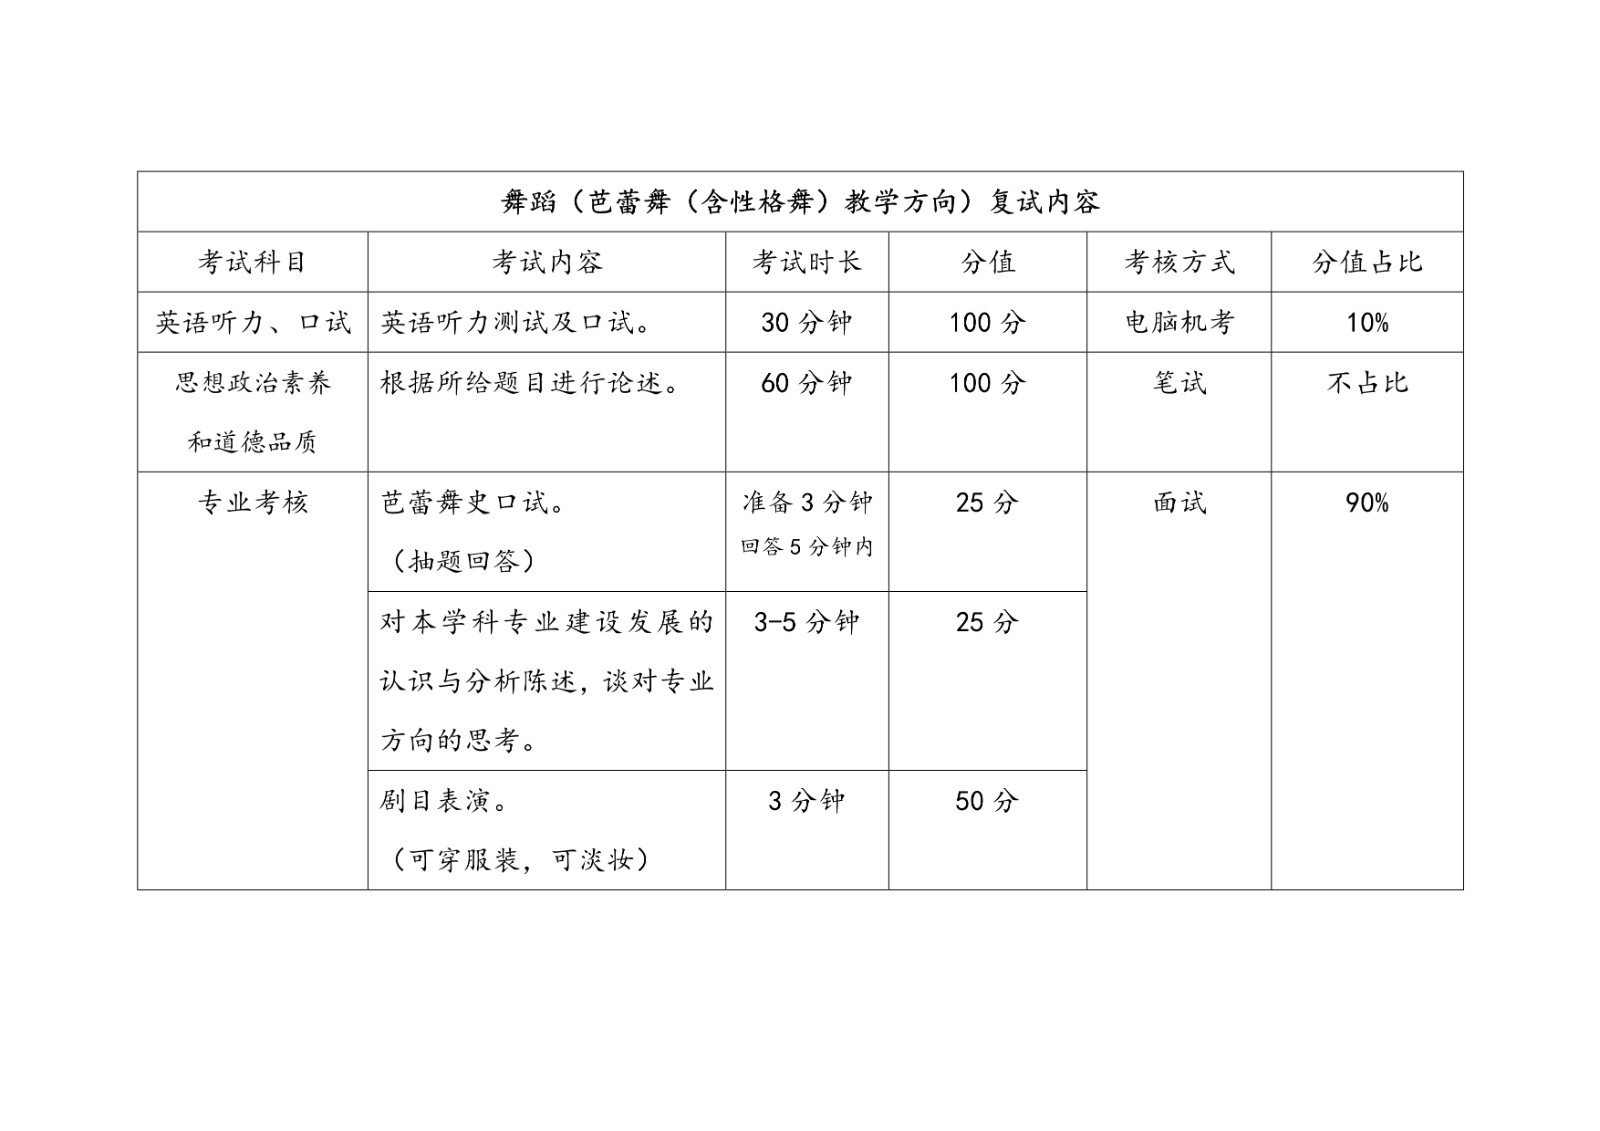 2021年北京舞蹈学院硕士研究生招生考试复试内容公告